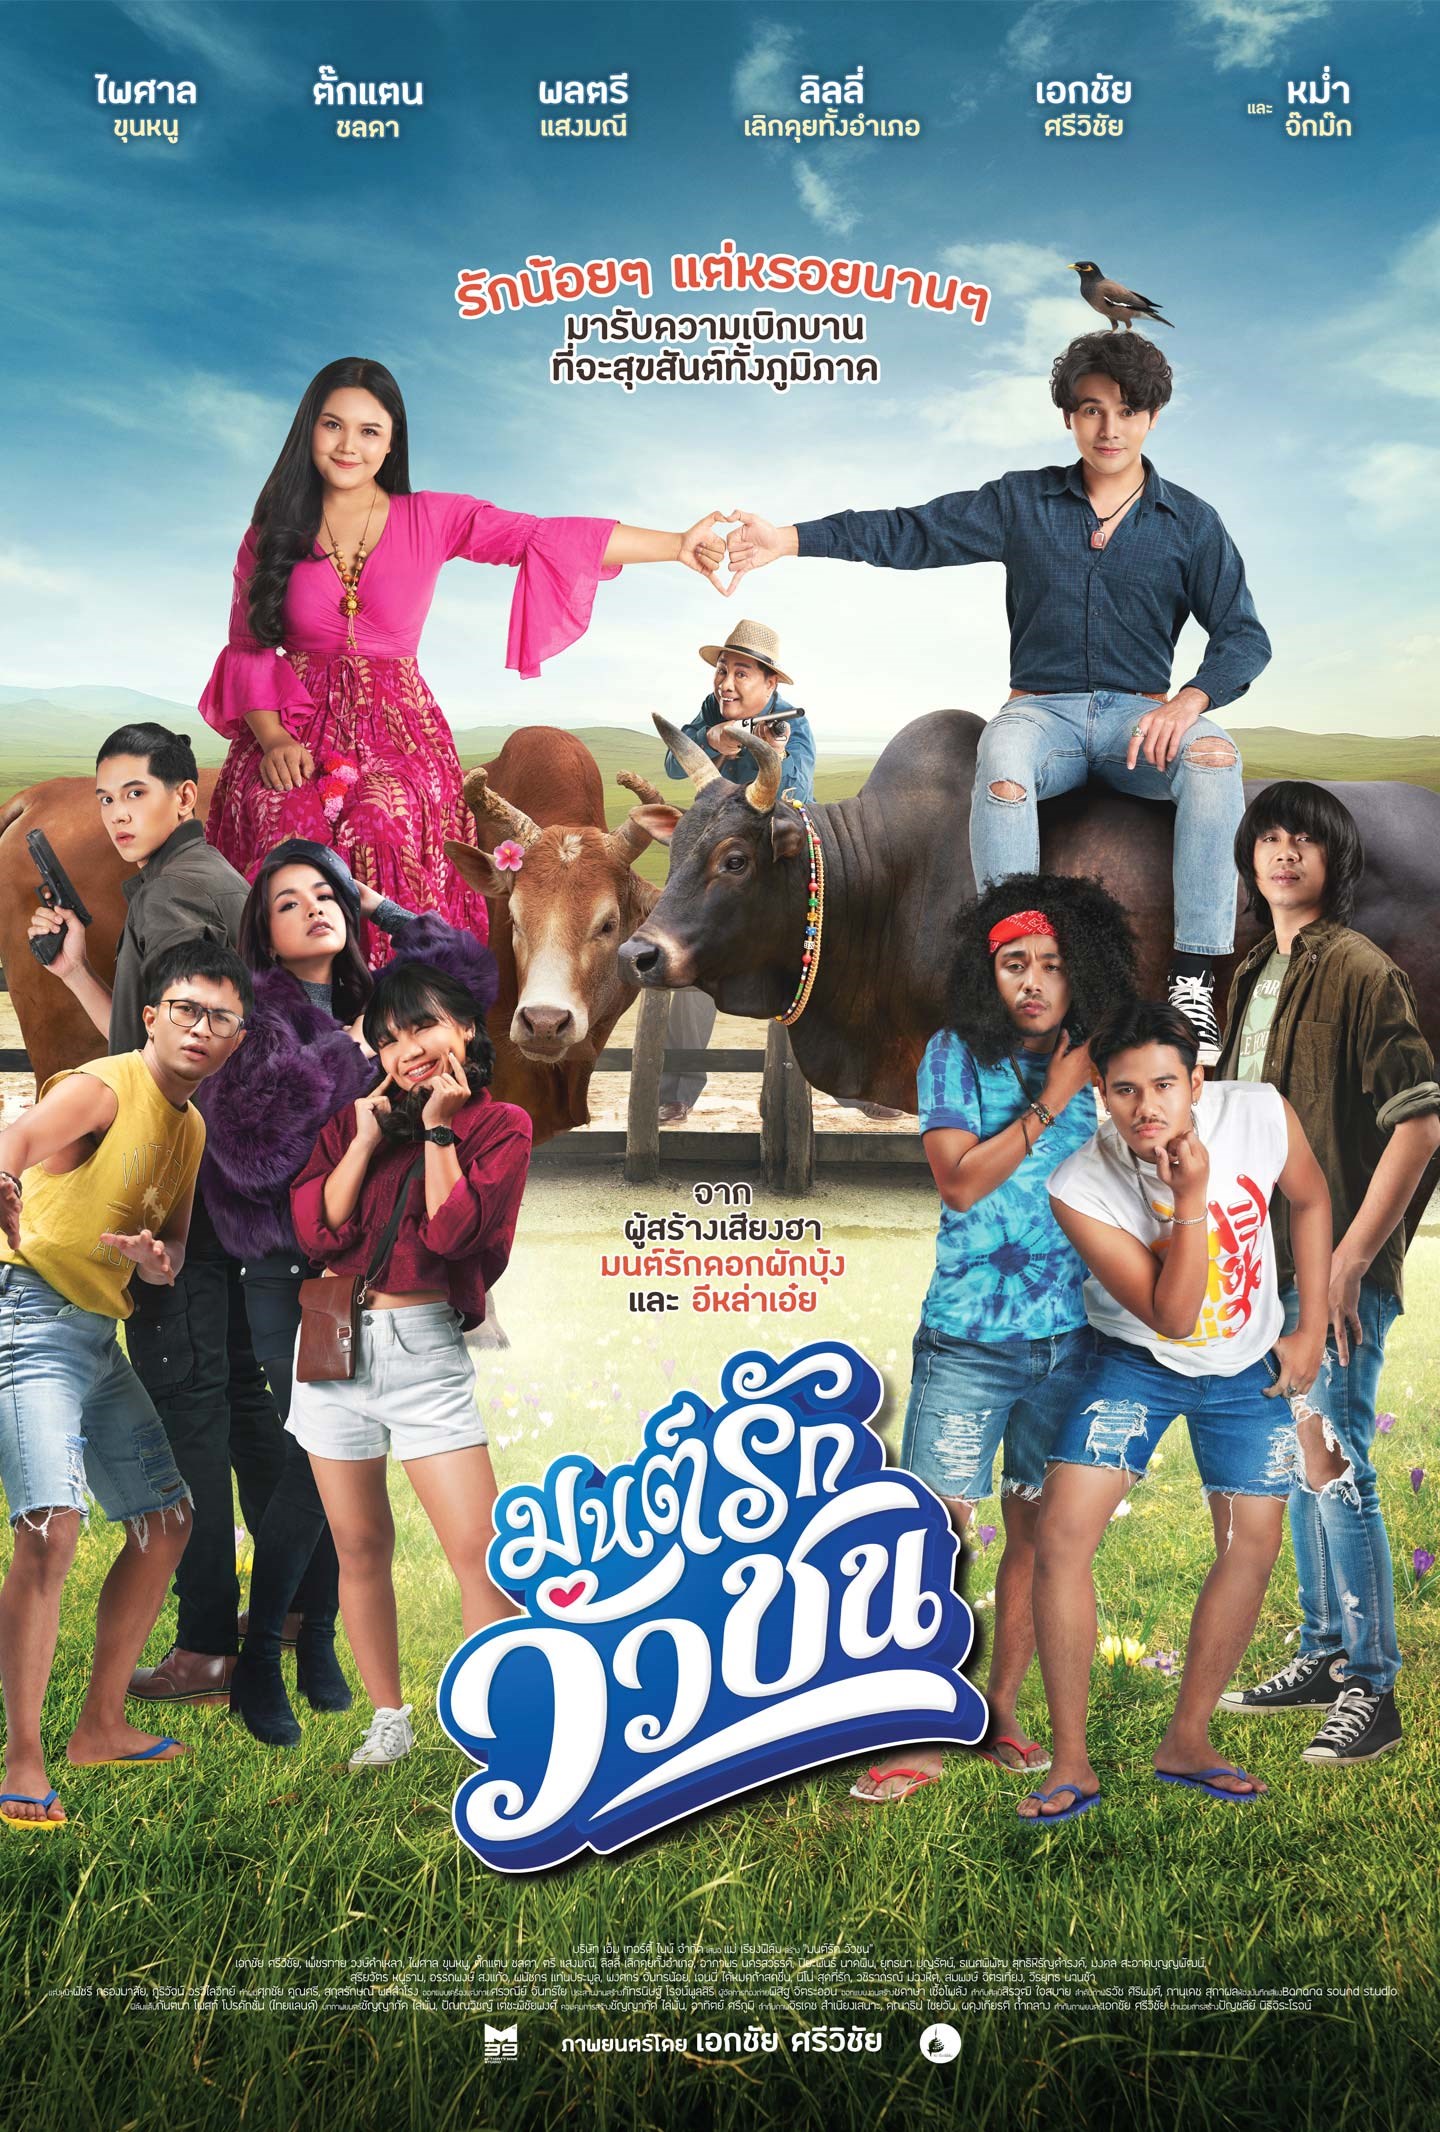 "มนต์รักวัวชน" หนังไทยที่นำคนใต้มาเจอกับคนอีสาน